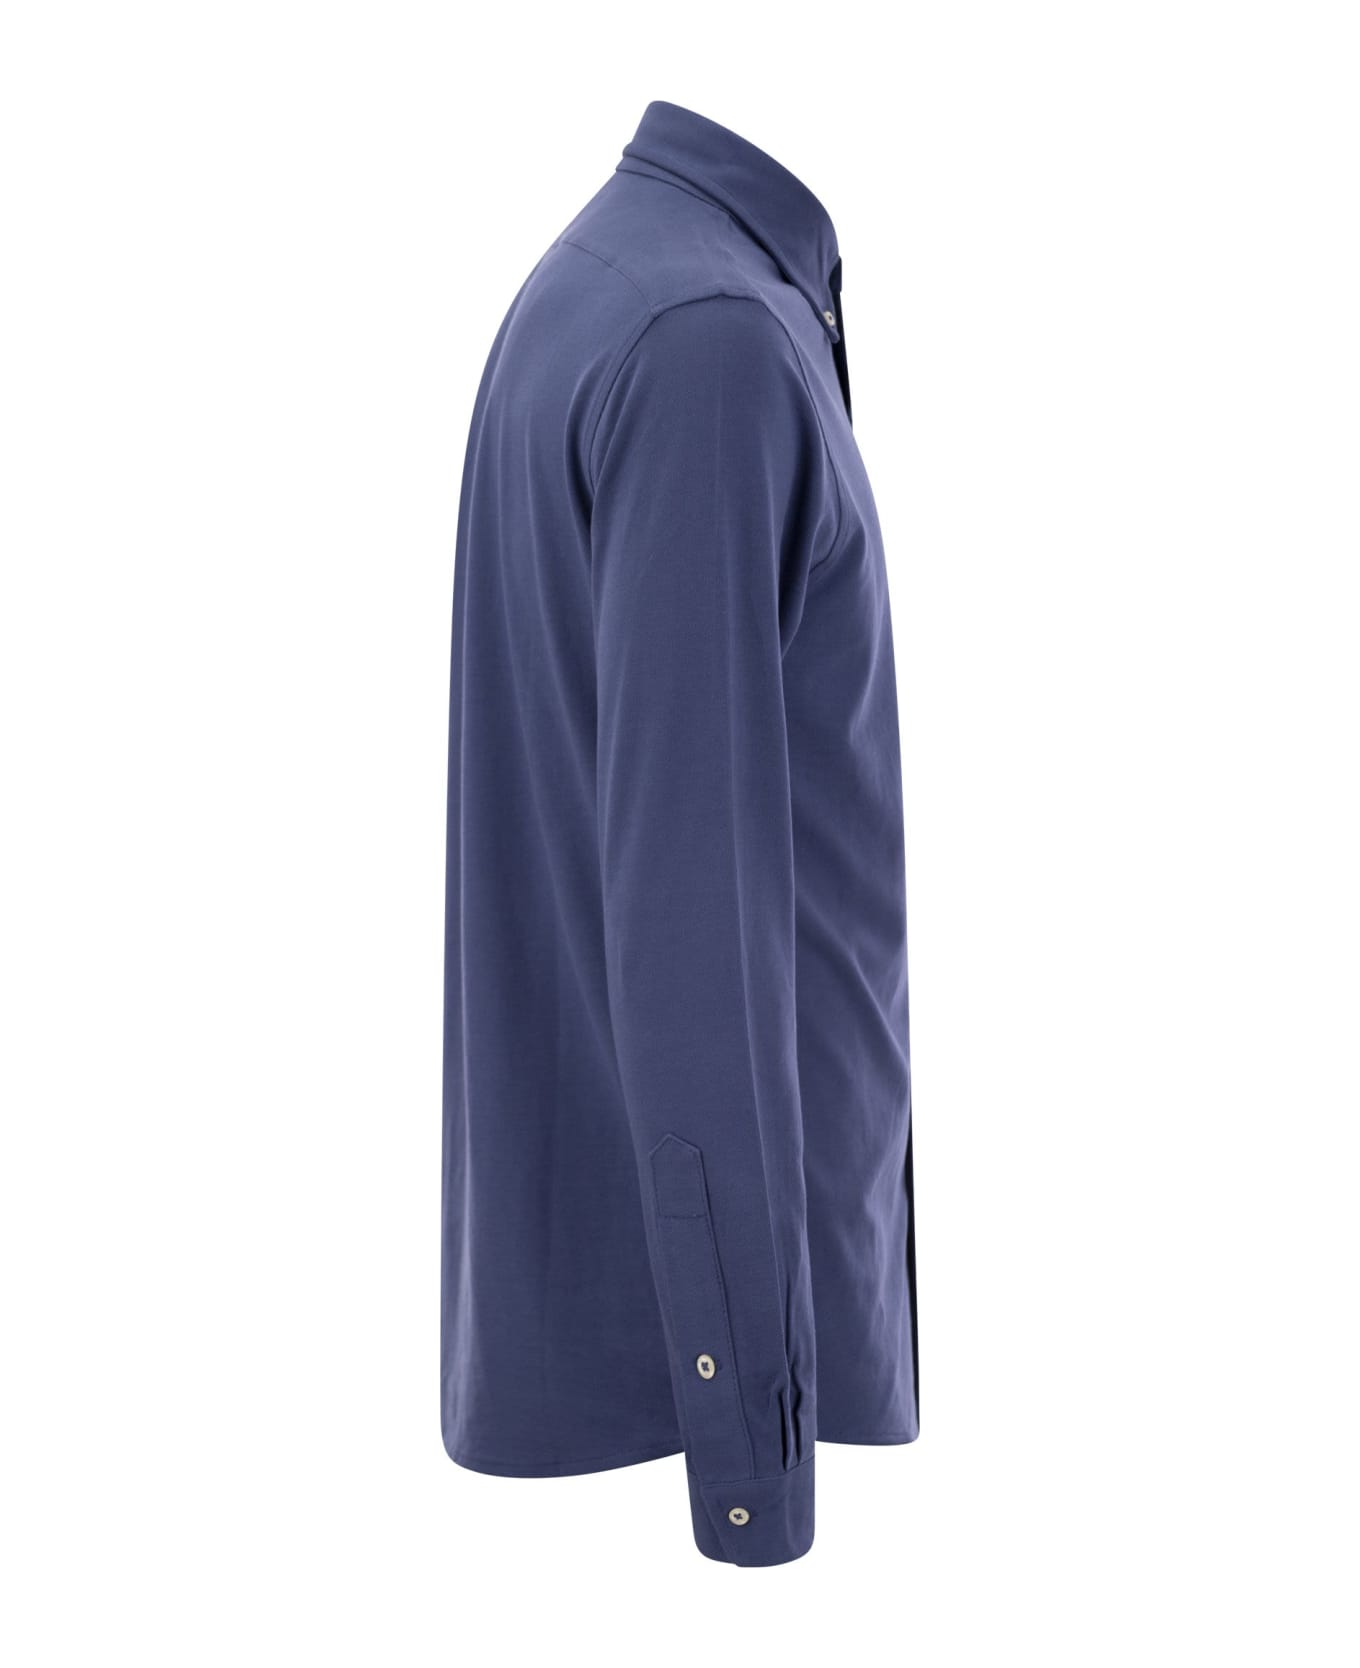 Polo Ralph Lauren Long Sleeve Sport Shirt Shirt - Avio シャツ